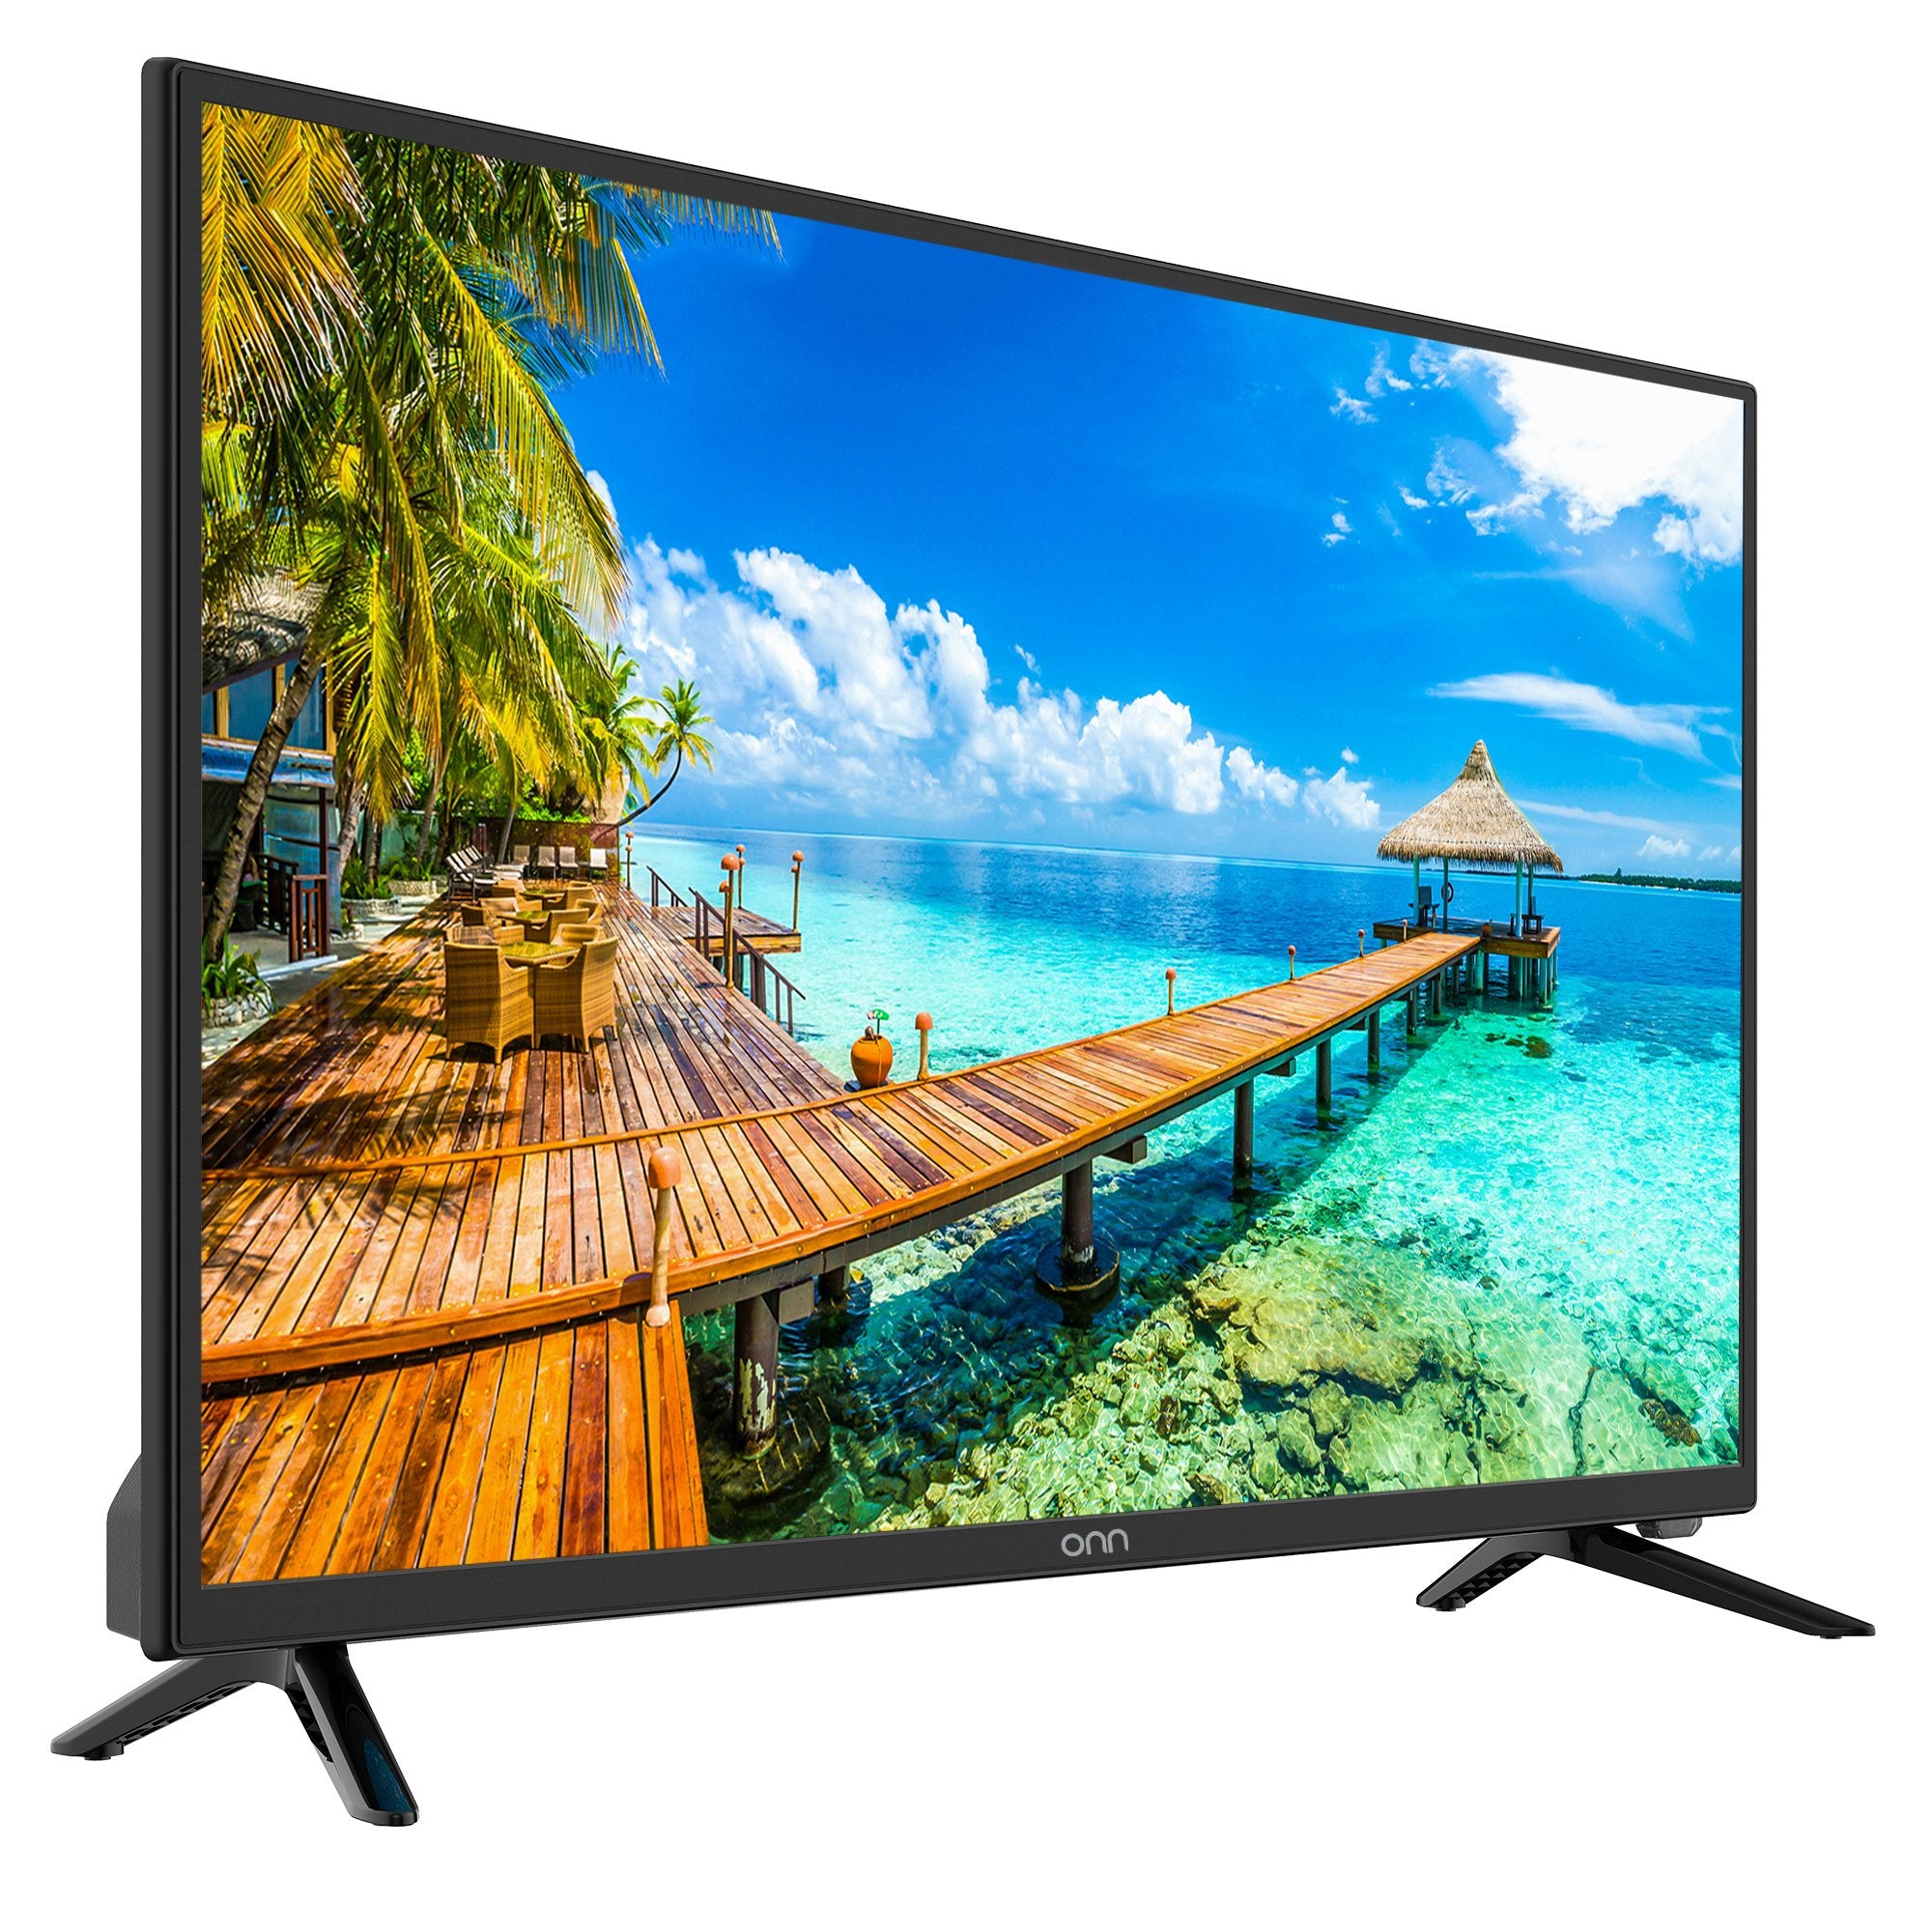 ONN TV 50" LED 4K - Ultra HD(Refurbished)